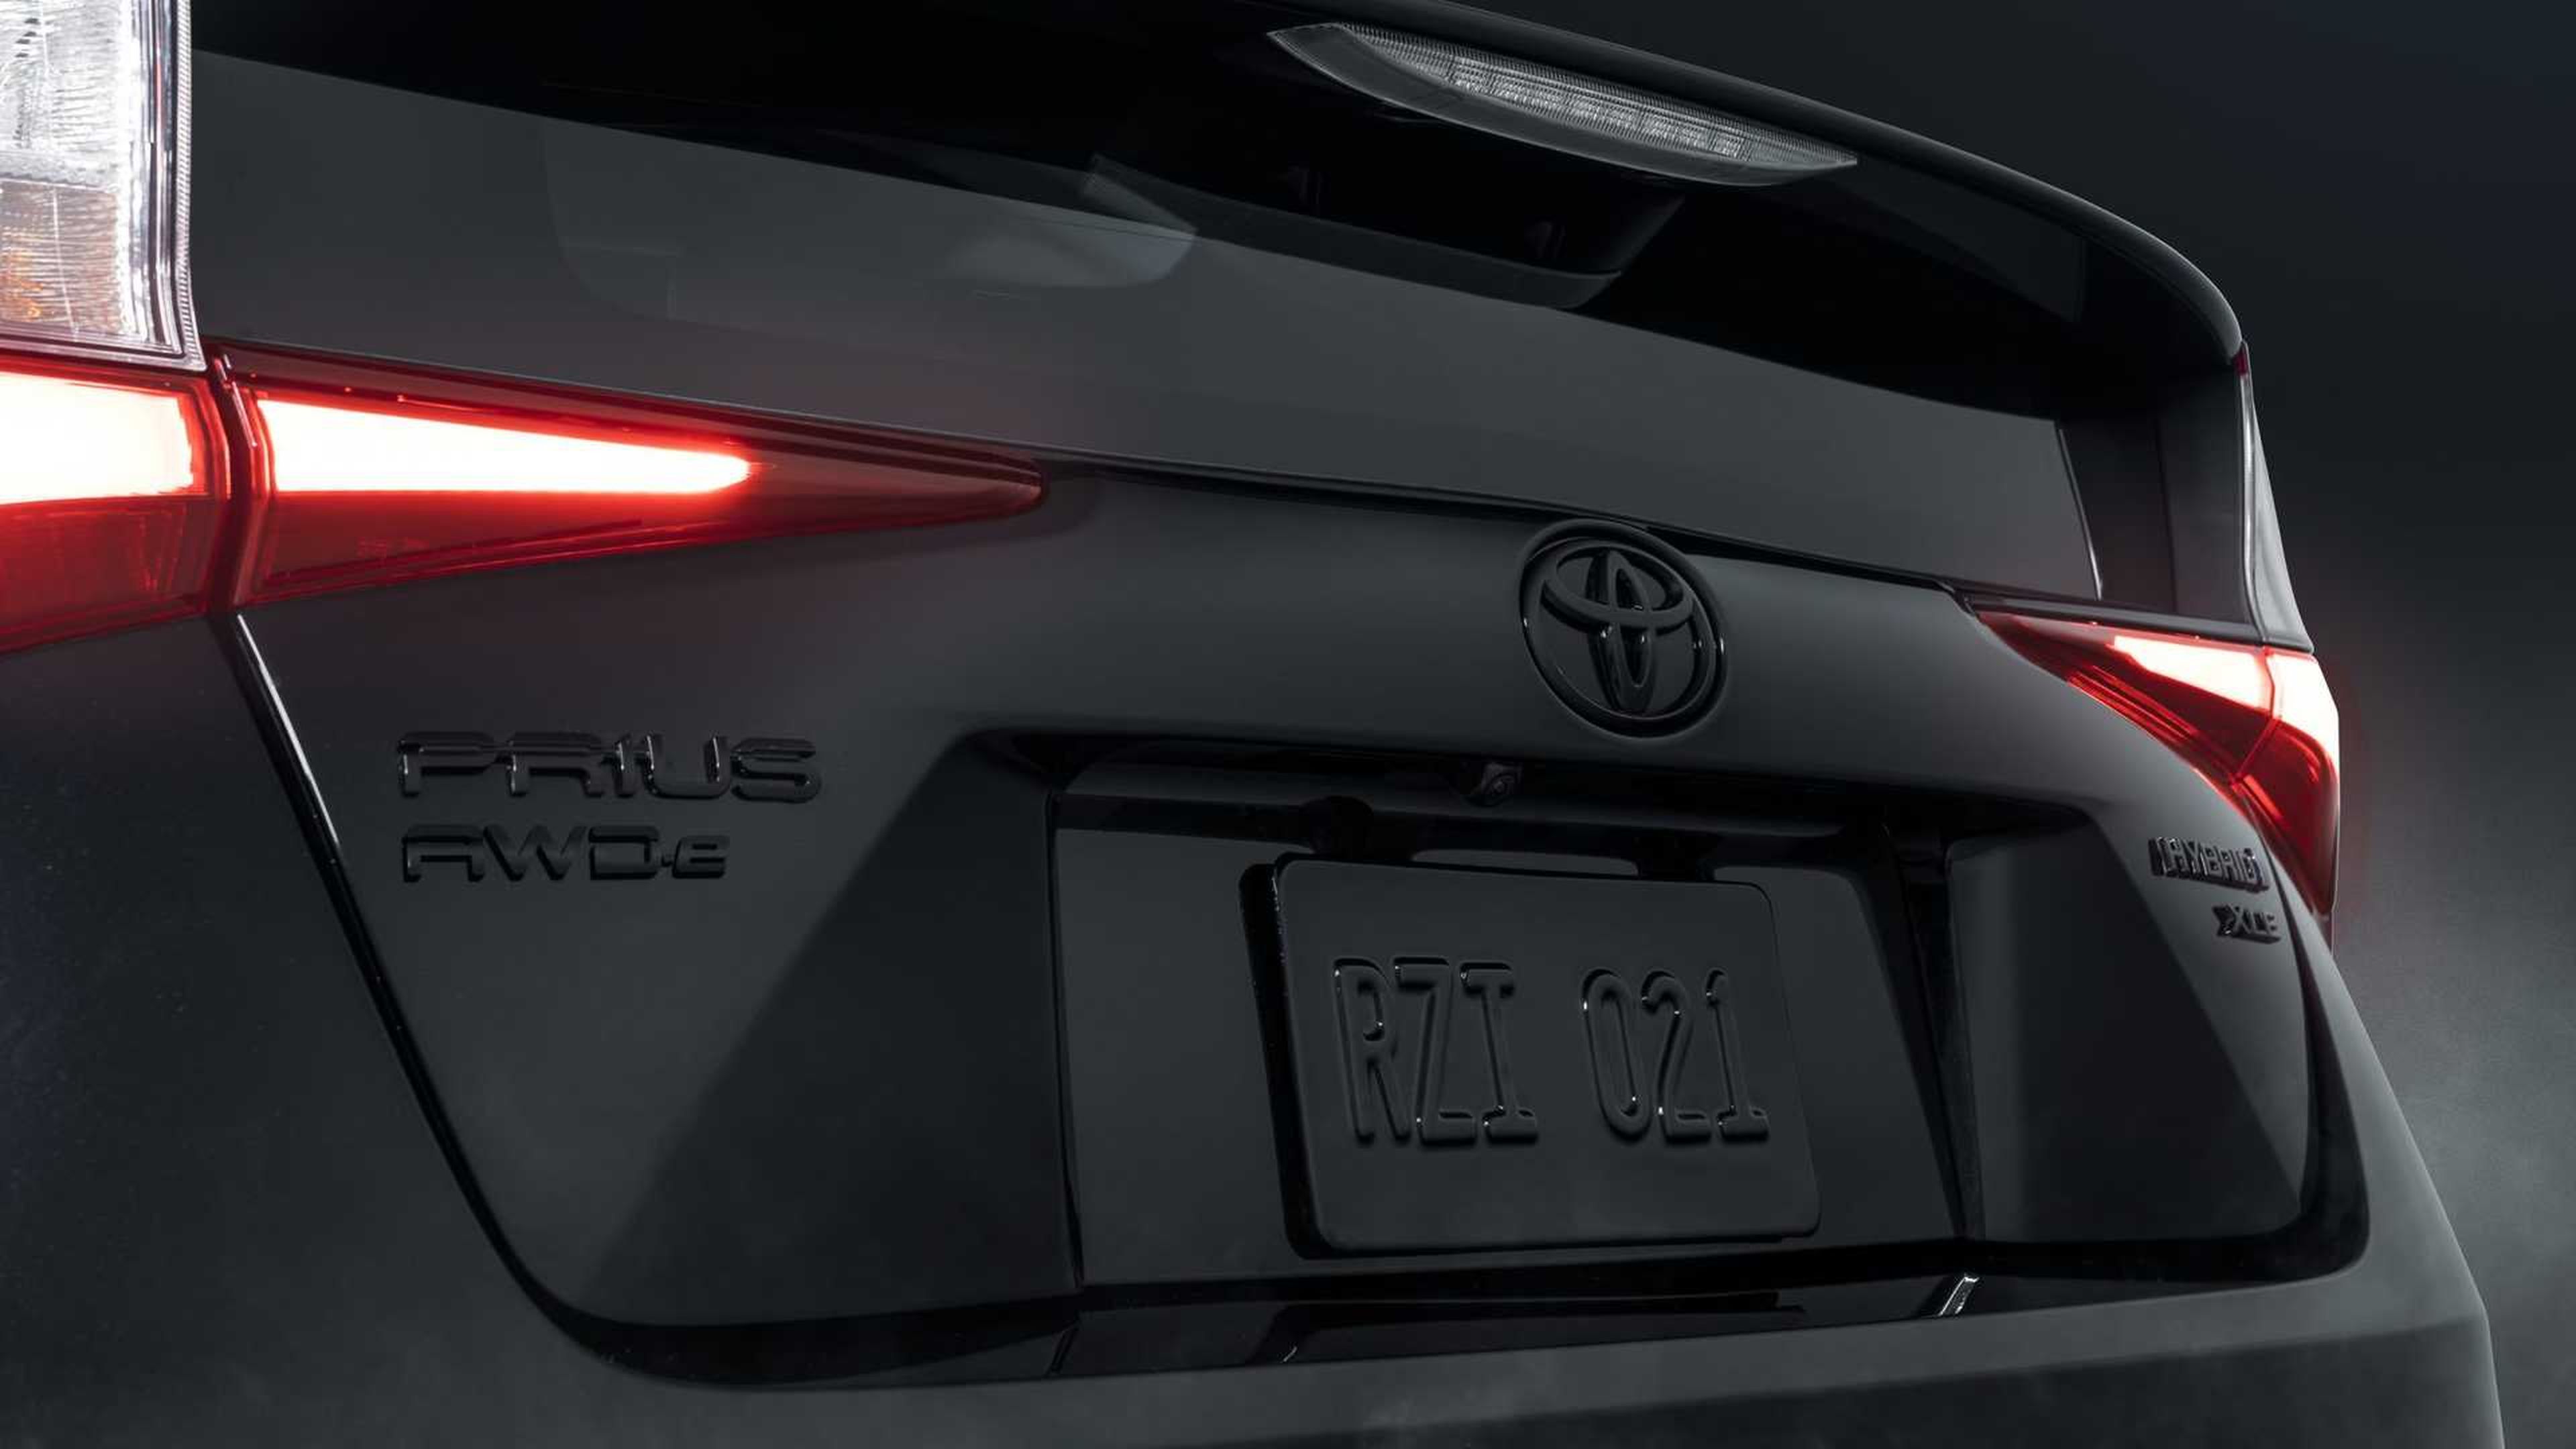 Toyota Prius Nightshade special edition vista trasera detalles